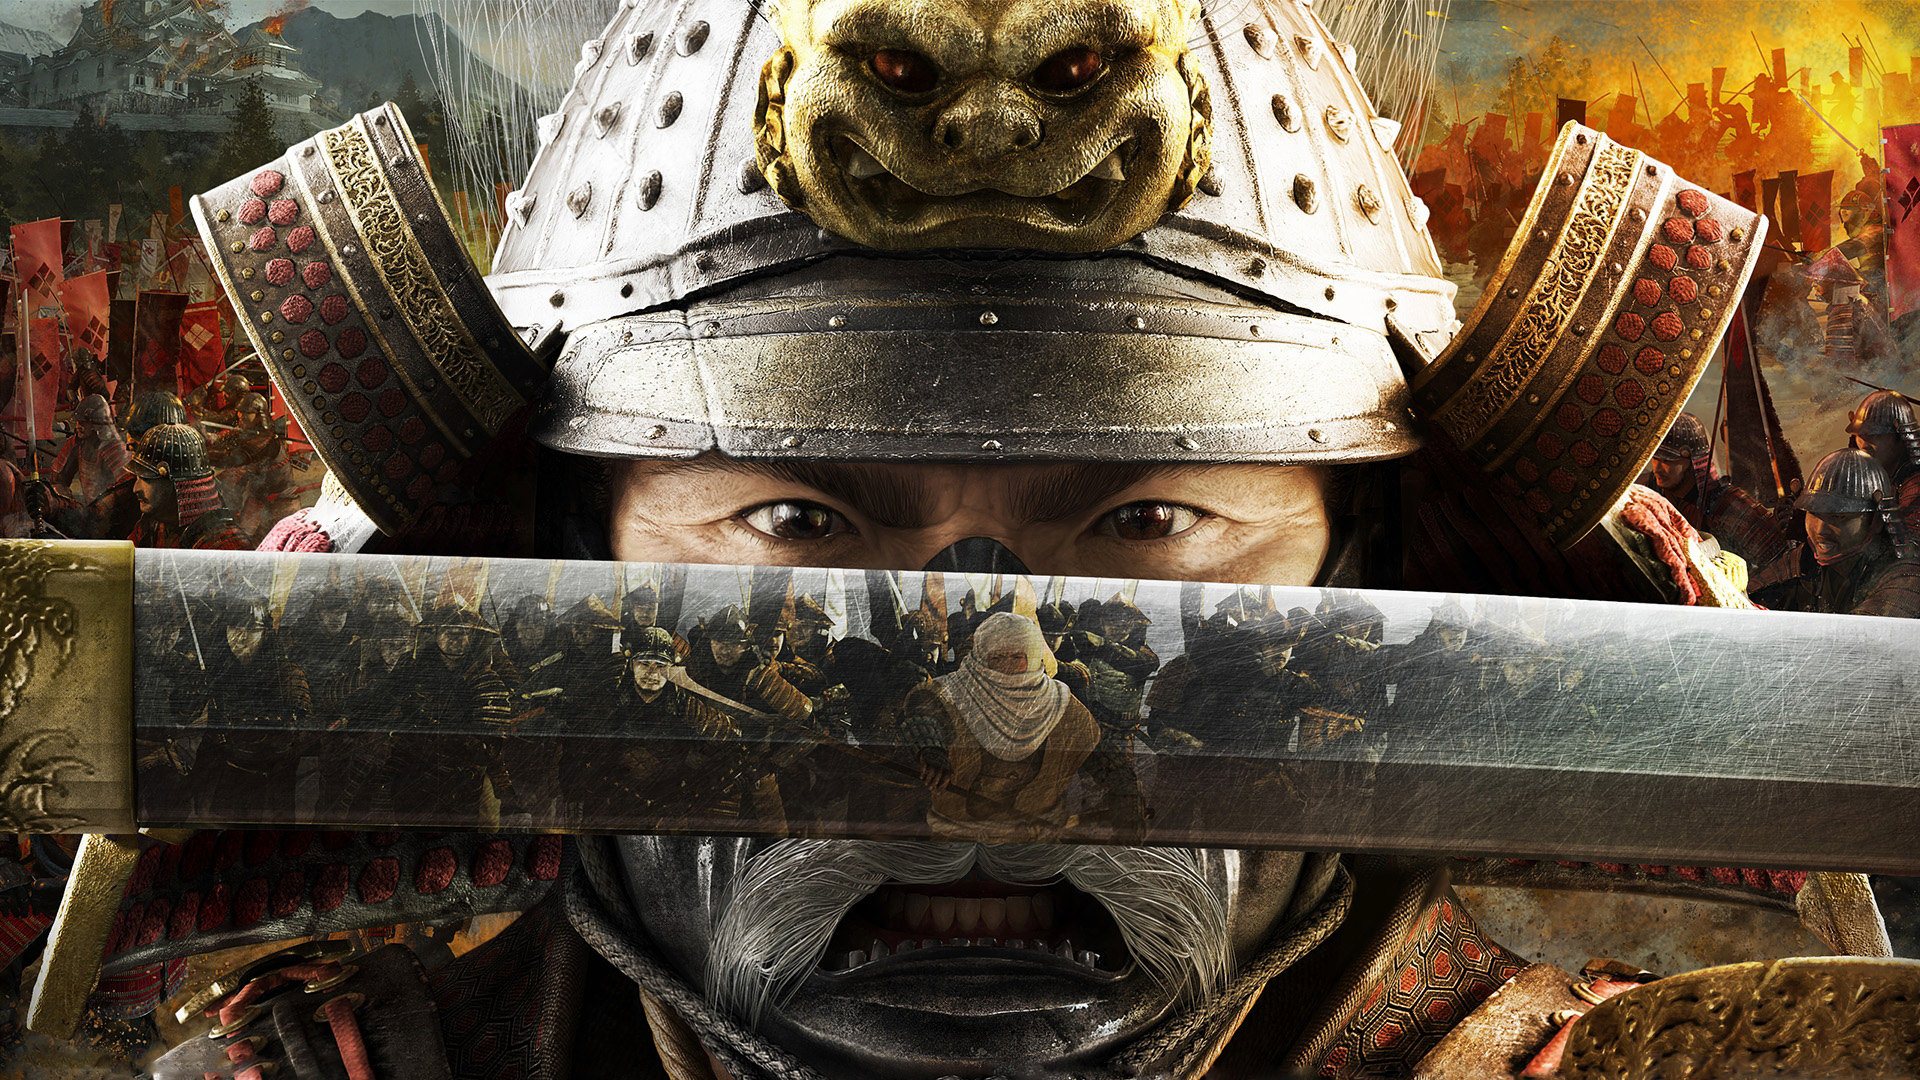 shogun 2 total war wallpaper background